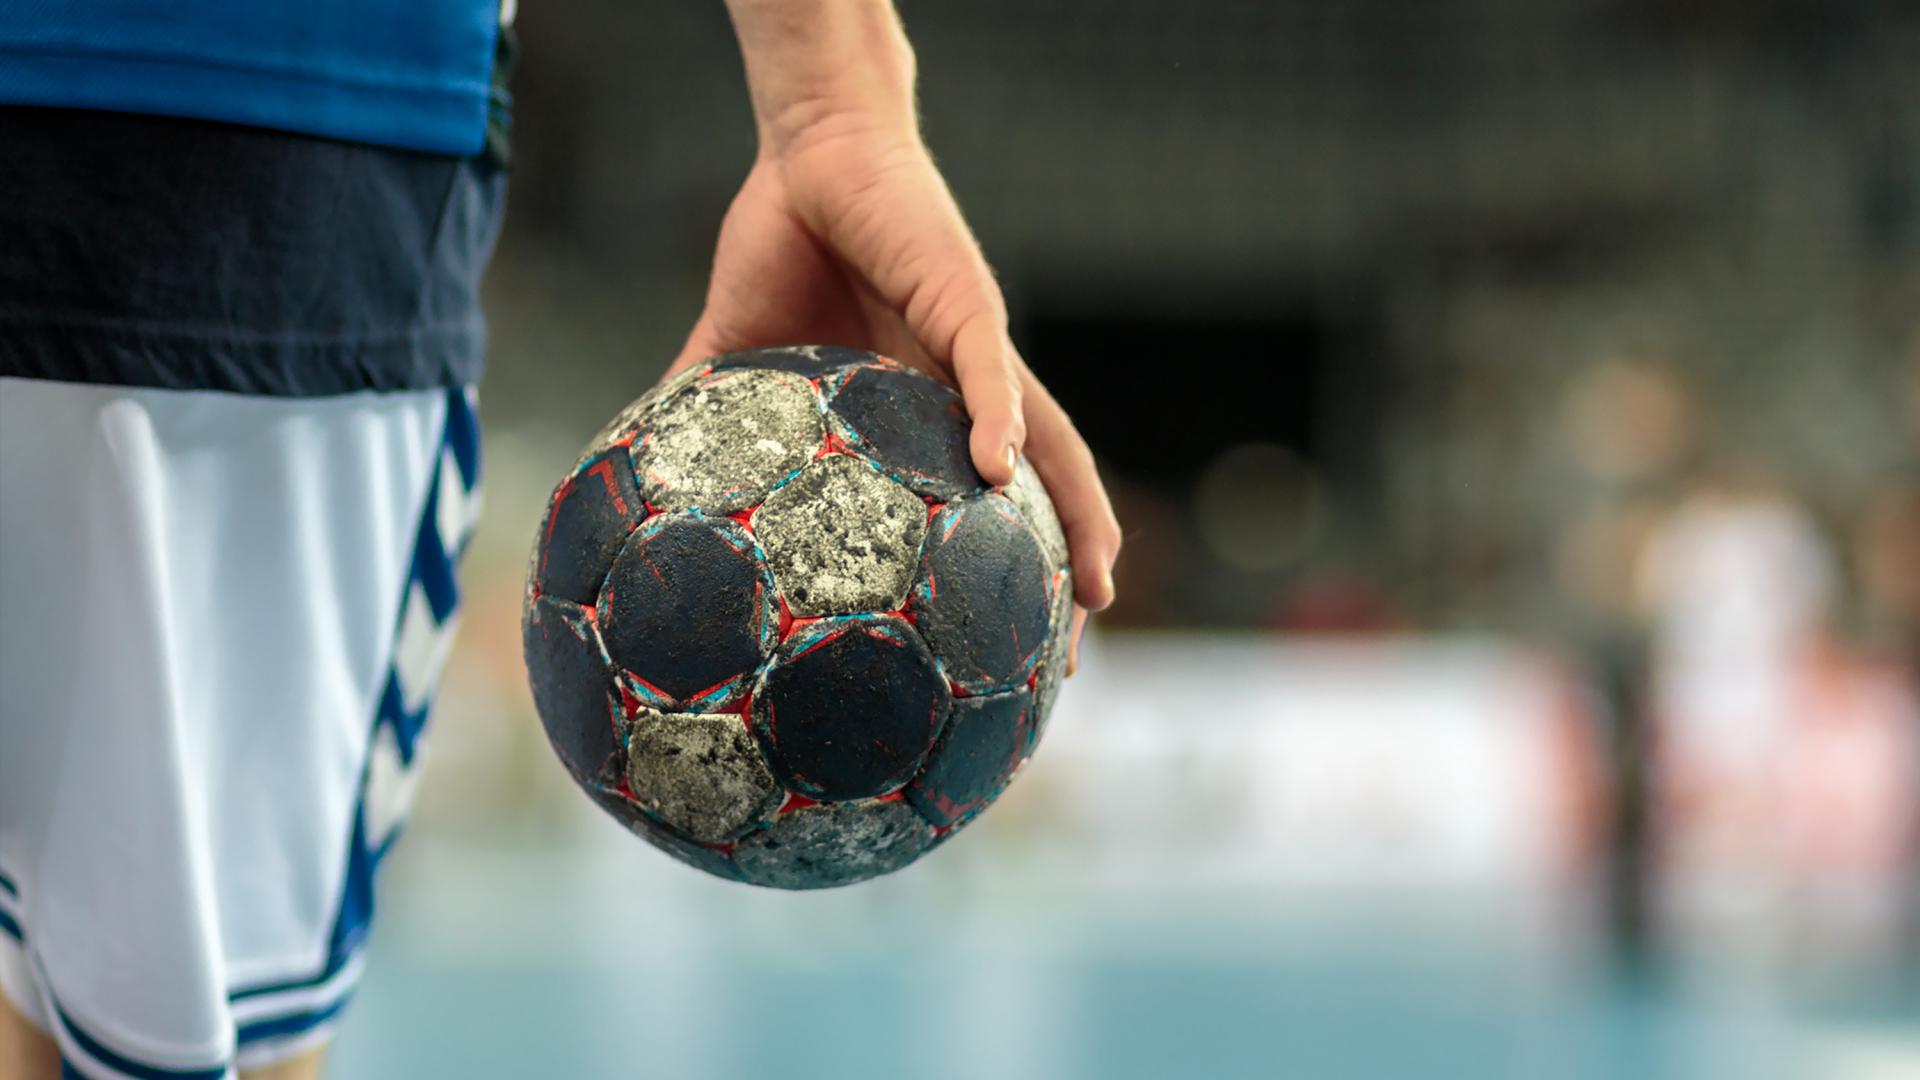 Korona-rukomet: 'Krivaja je namirisala krv i nije željela odgodu utakmice'